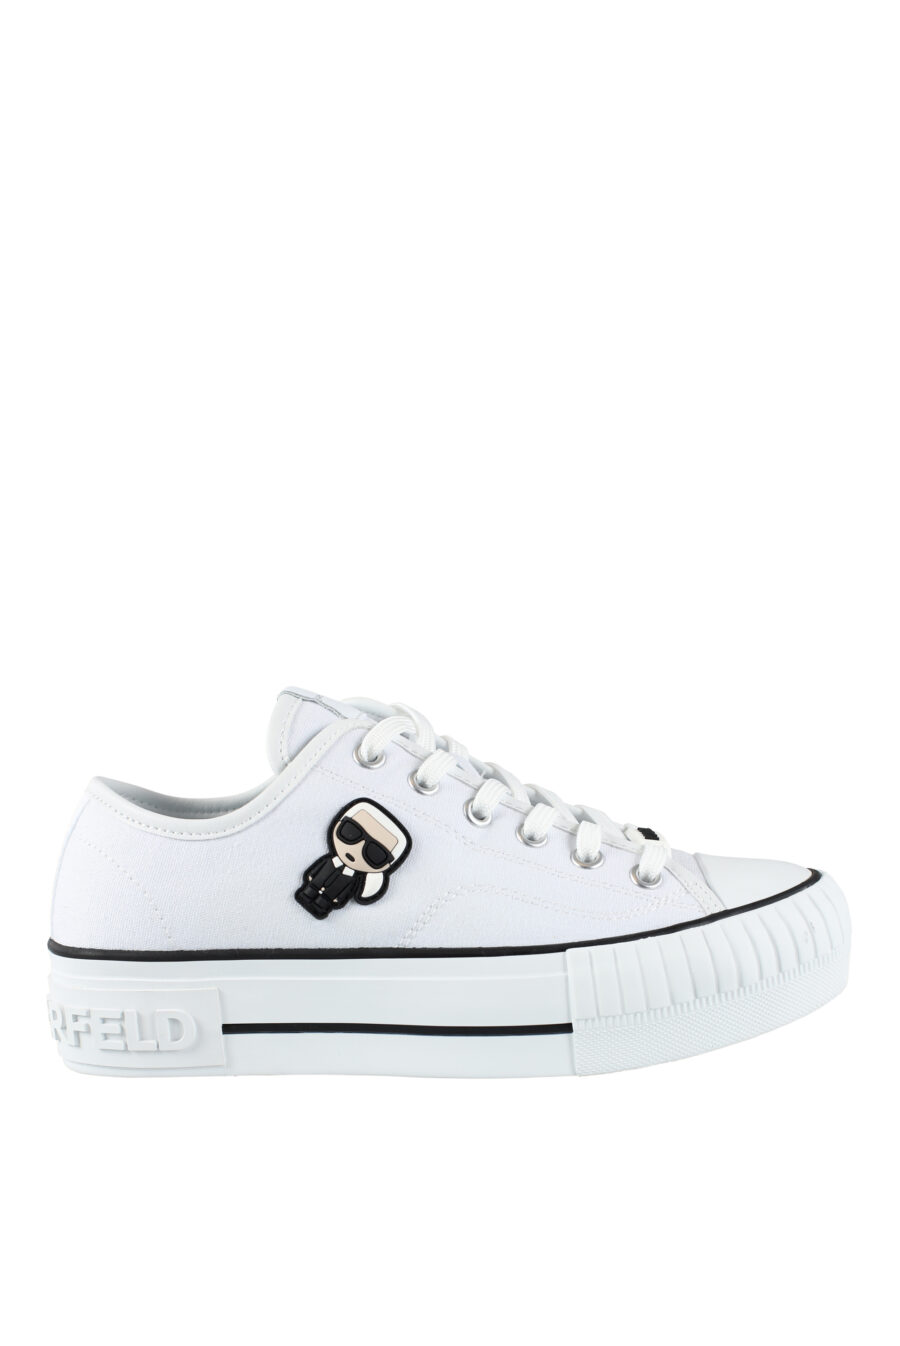 Zapatillas blancas estilo converse con logo "karl" en goma - IMG 9560